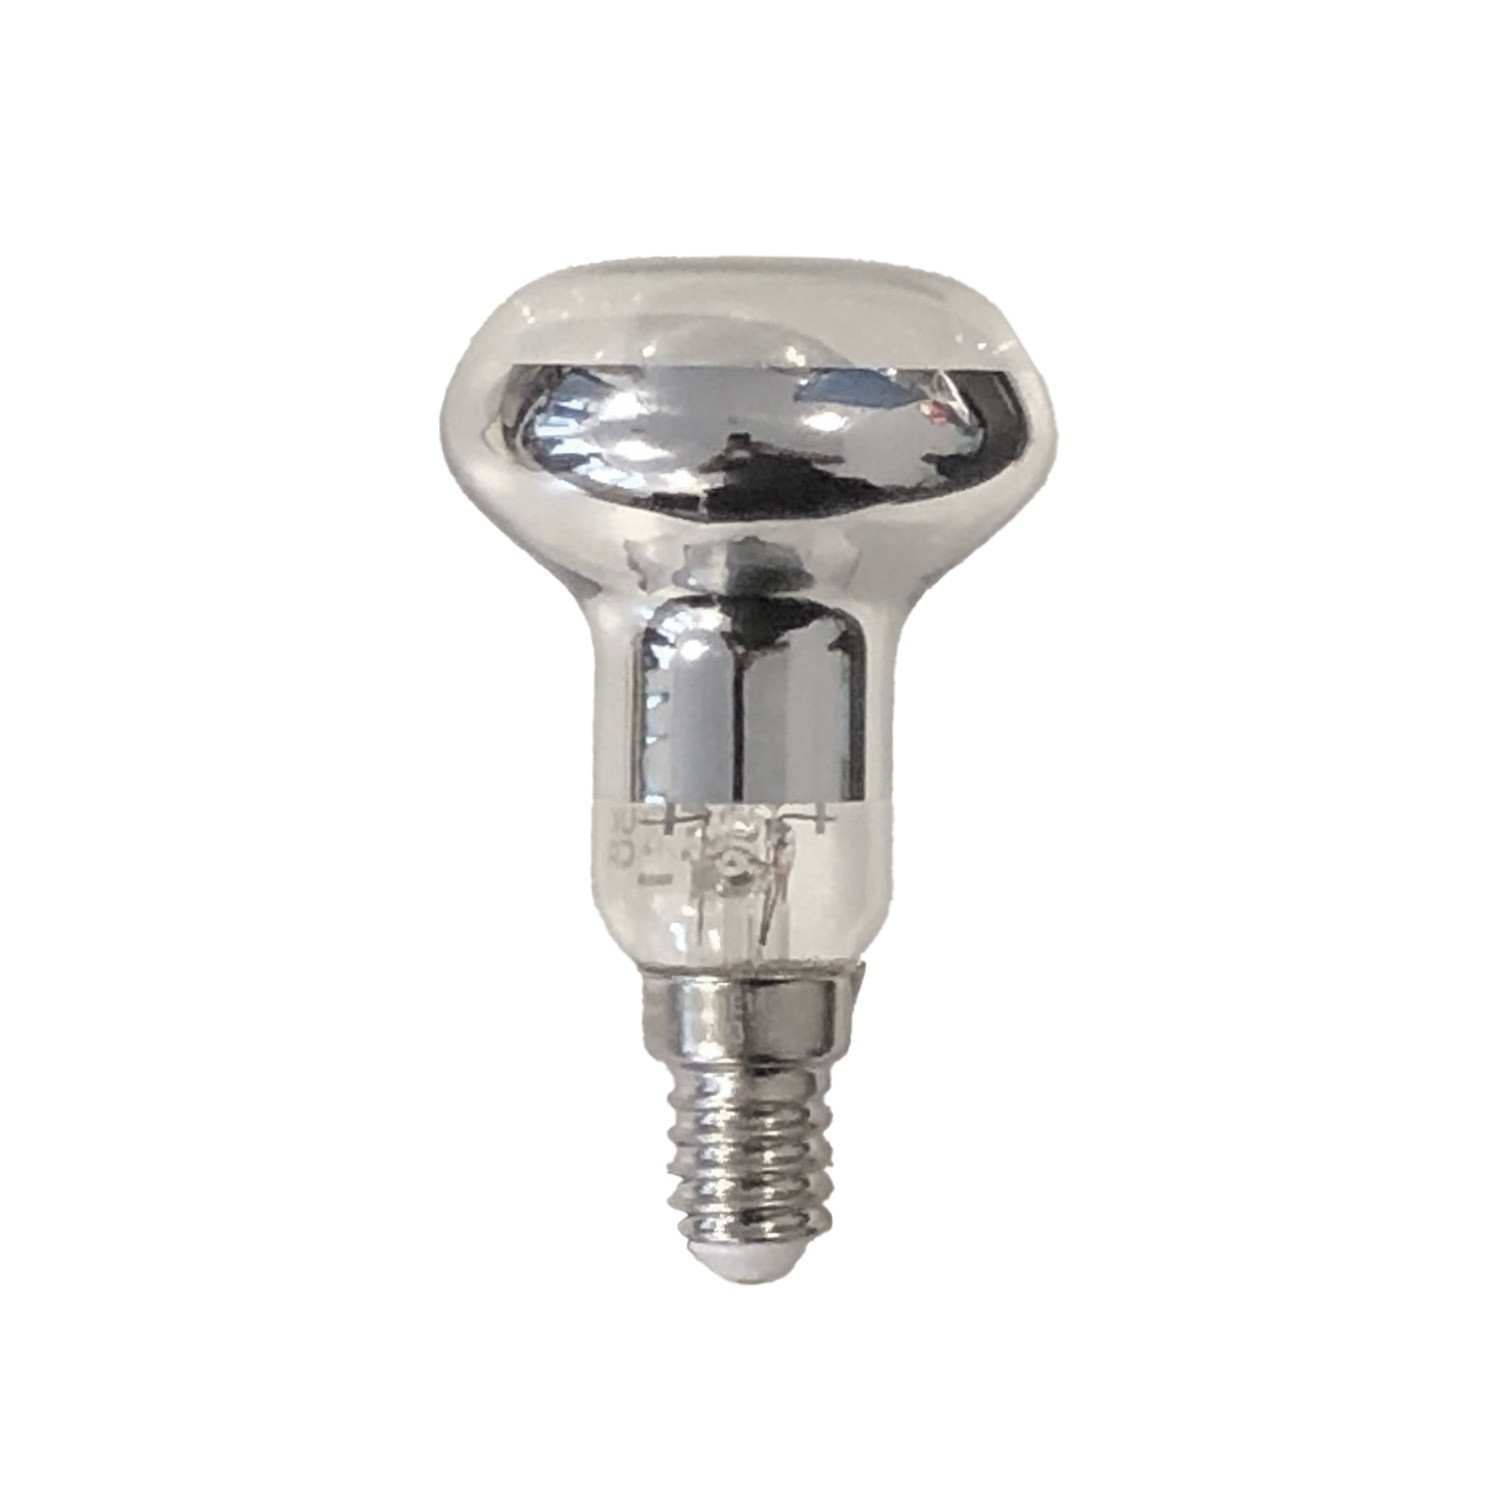 6 lichts-hanglamp voorzien van XXL rechthoekige Rose-One 675 mm compleet met strijkijzersnoer en Tub E14 metalen lampenkap